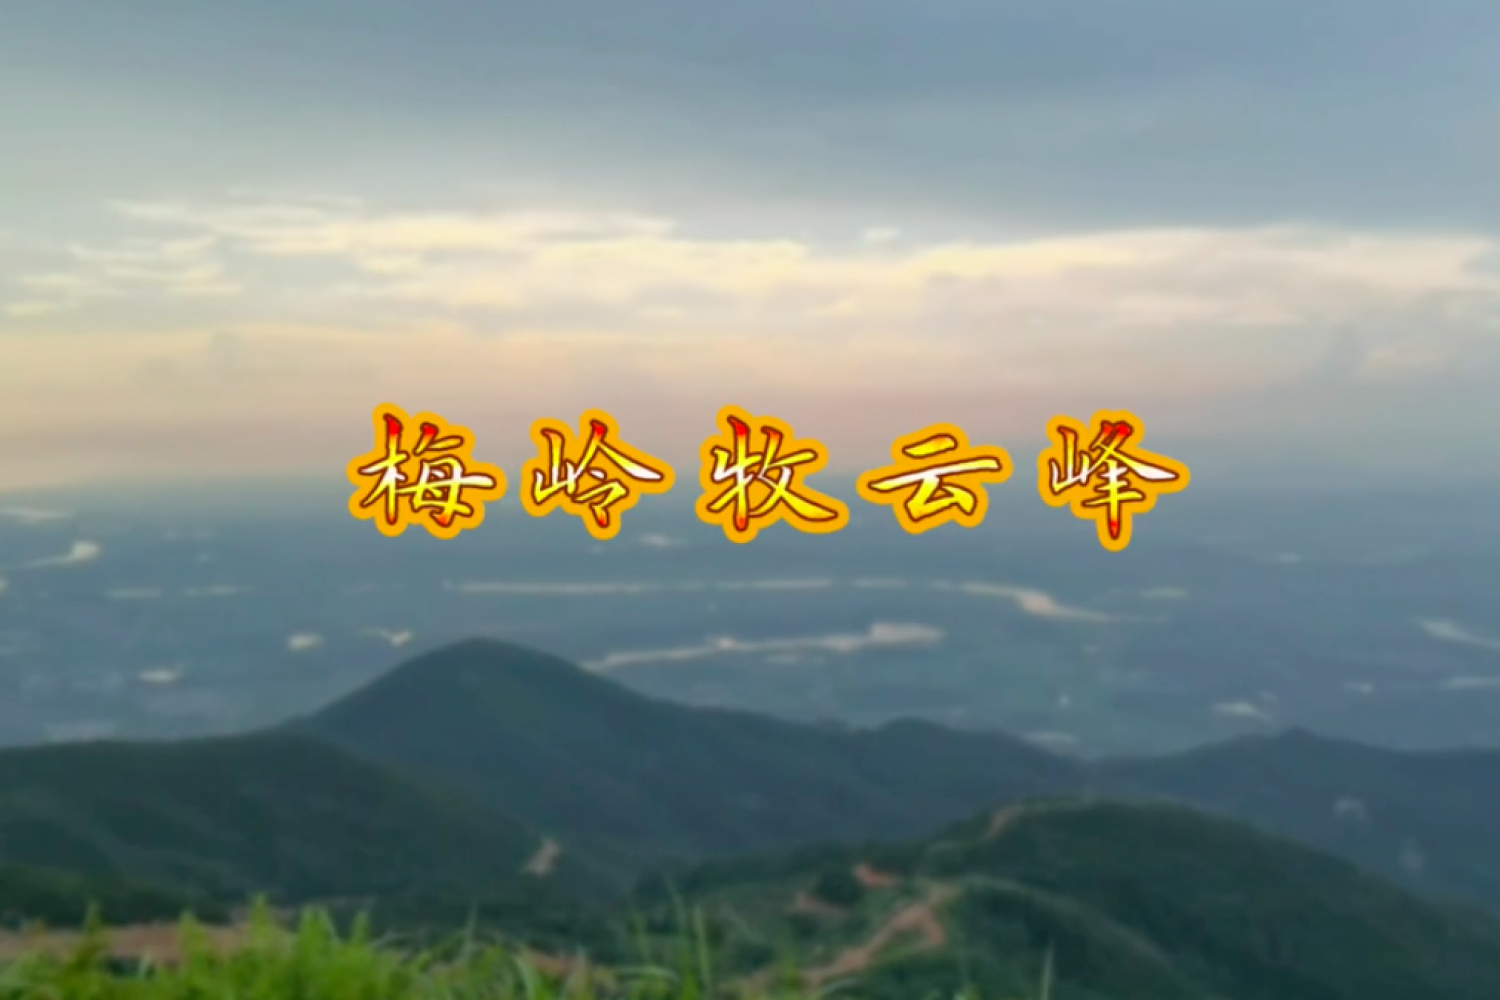 【携程攻略】南昌梅岭国家级风景名胜区景点,去梅岭，最好自驾，这样可以观看沿途景色。去狮子峰的路上，进入梅岭…